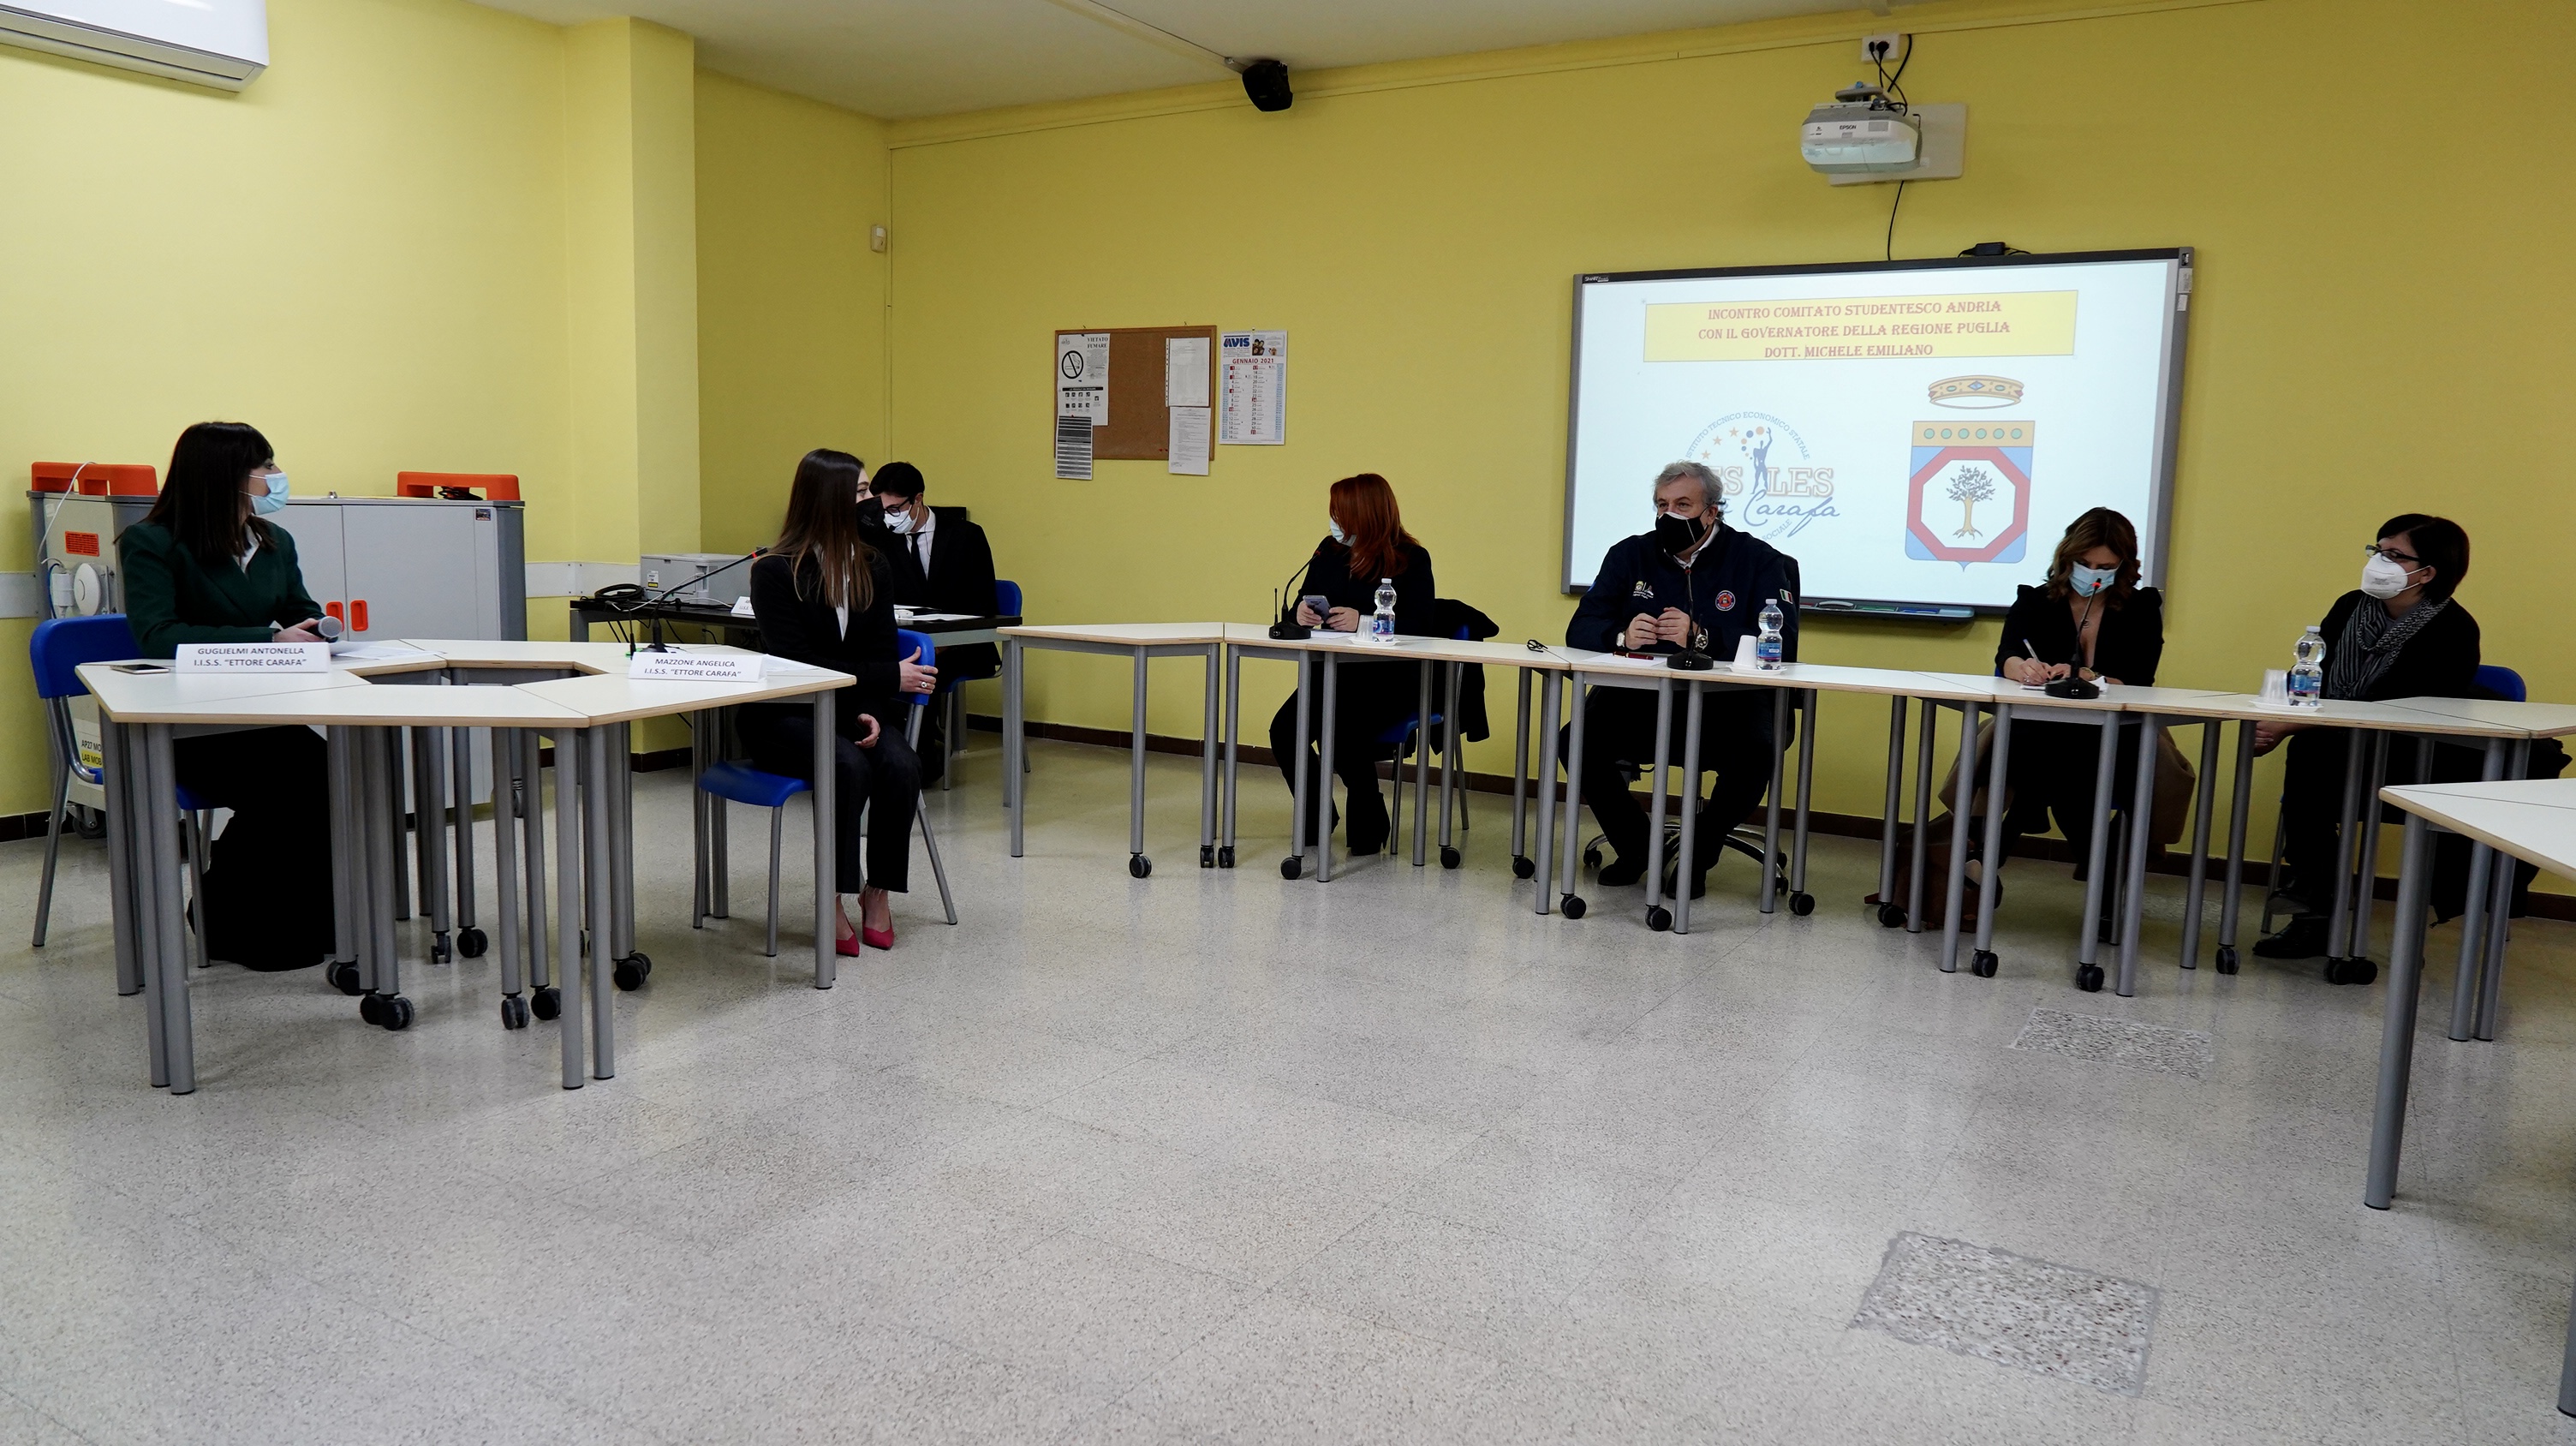 Galleria Scuola, Emiliano oggi ad Andria per un dibattito con gli studenti - Diapositiva 4 di 11